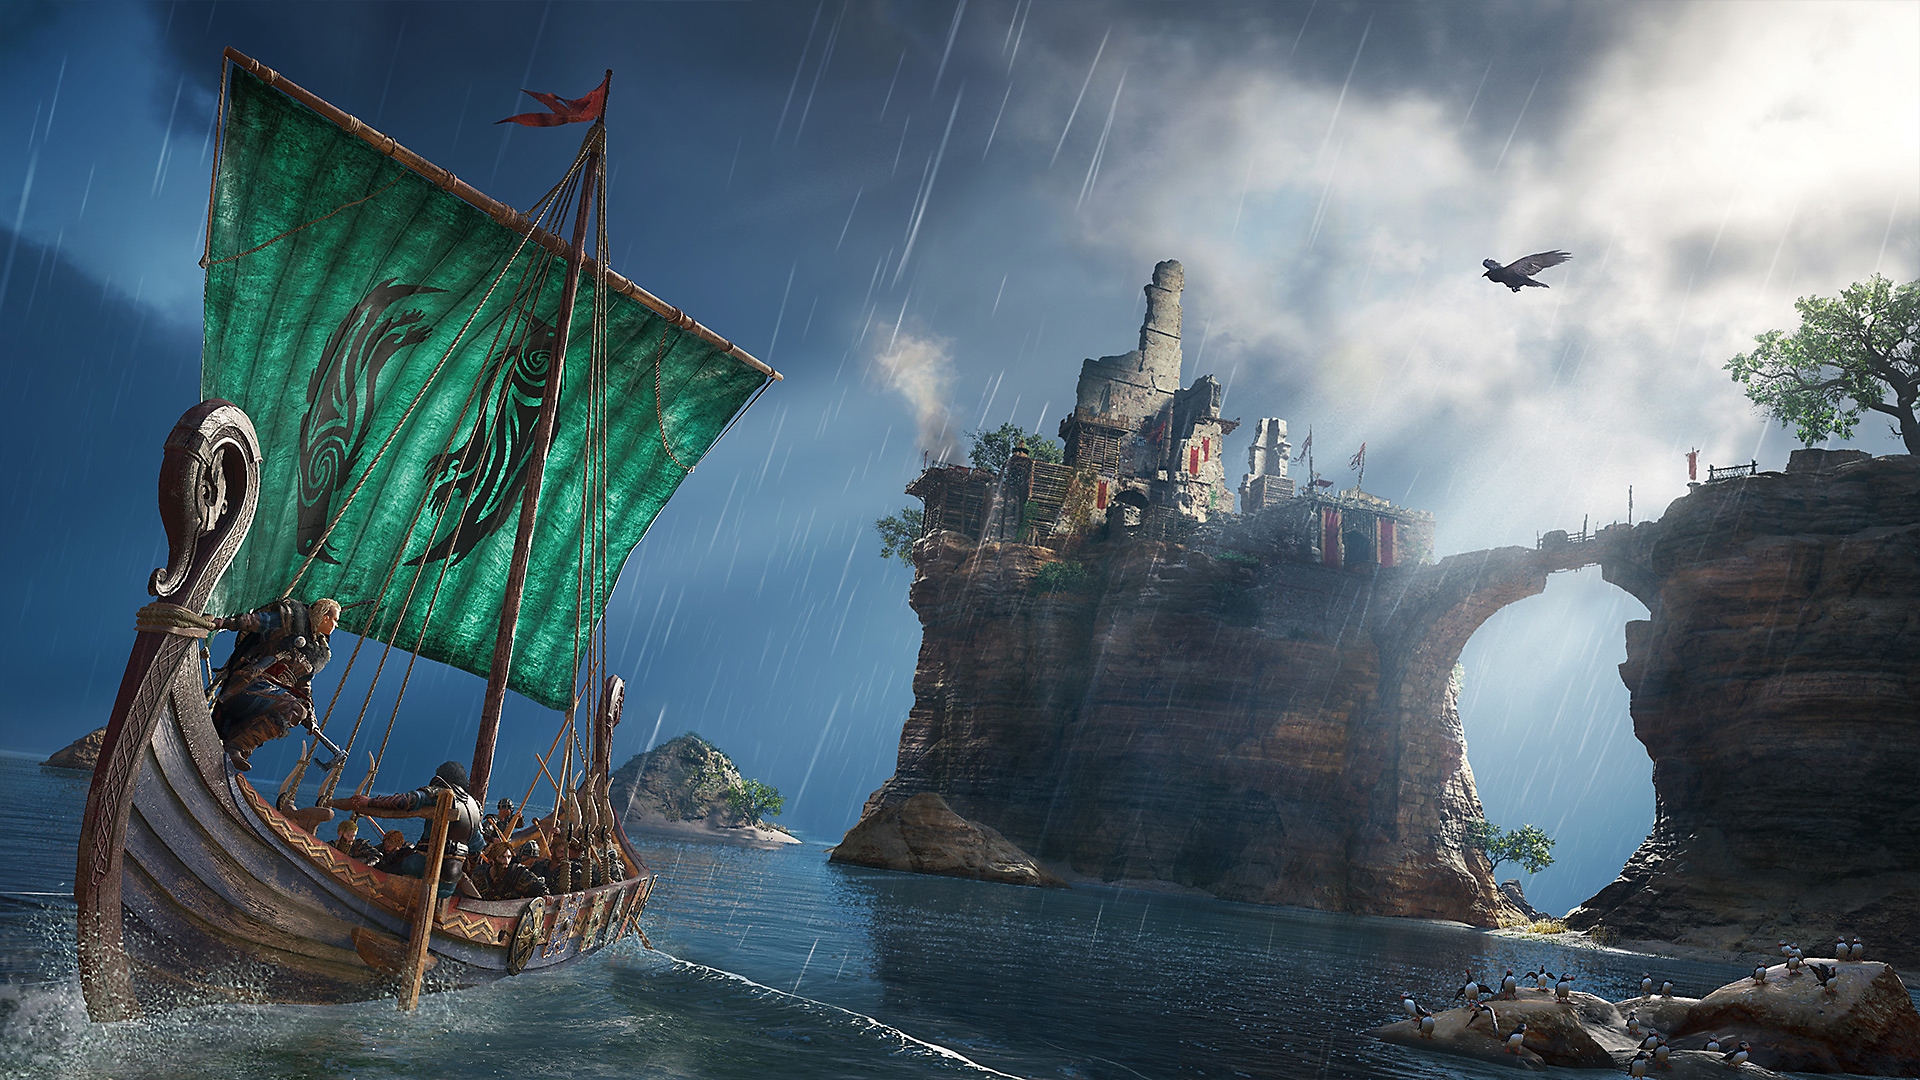 Istantanea di una schermata di Assassin's Creed Valhalla che mostra un personaggio su una nave vichinga che guarda in alto verso un edificio su un'isola